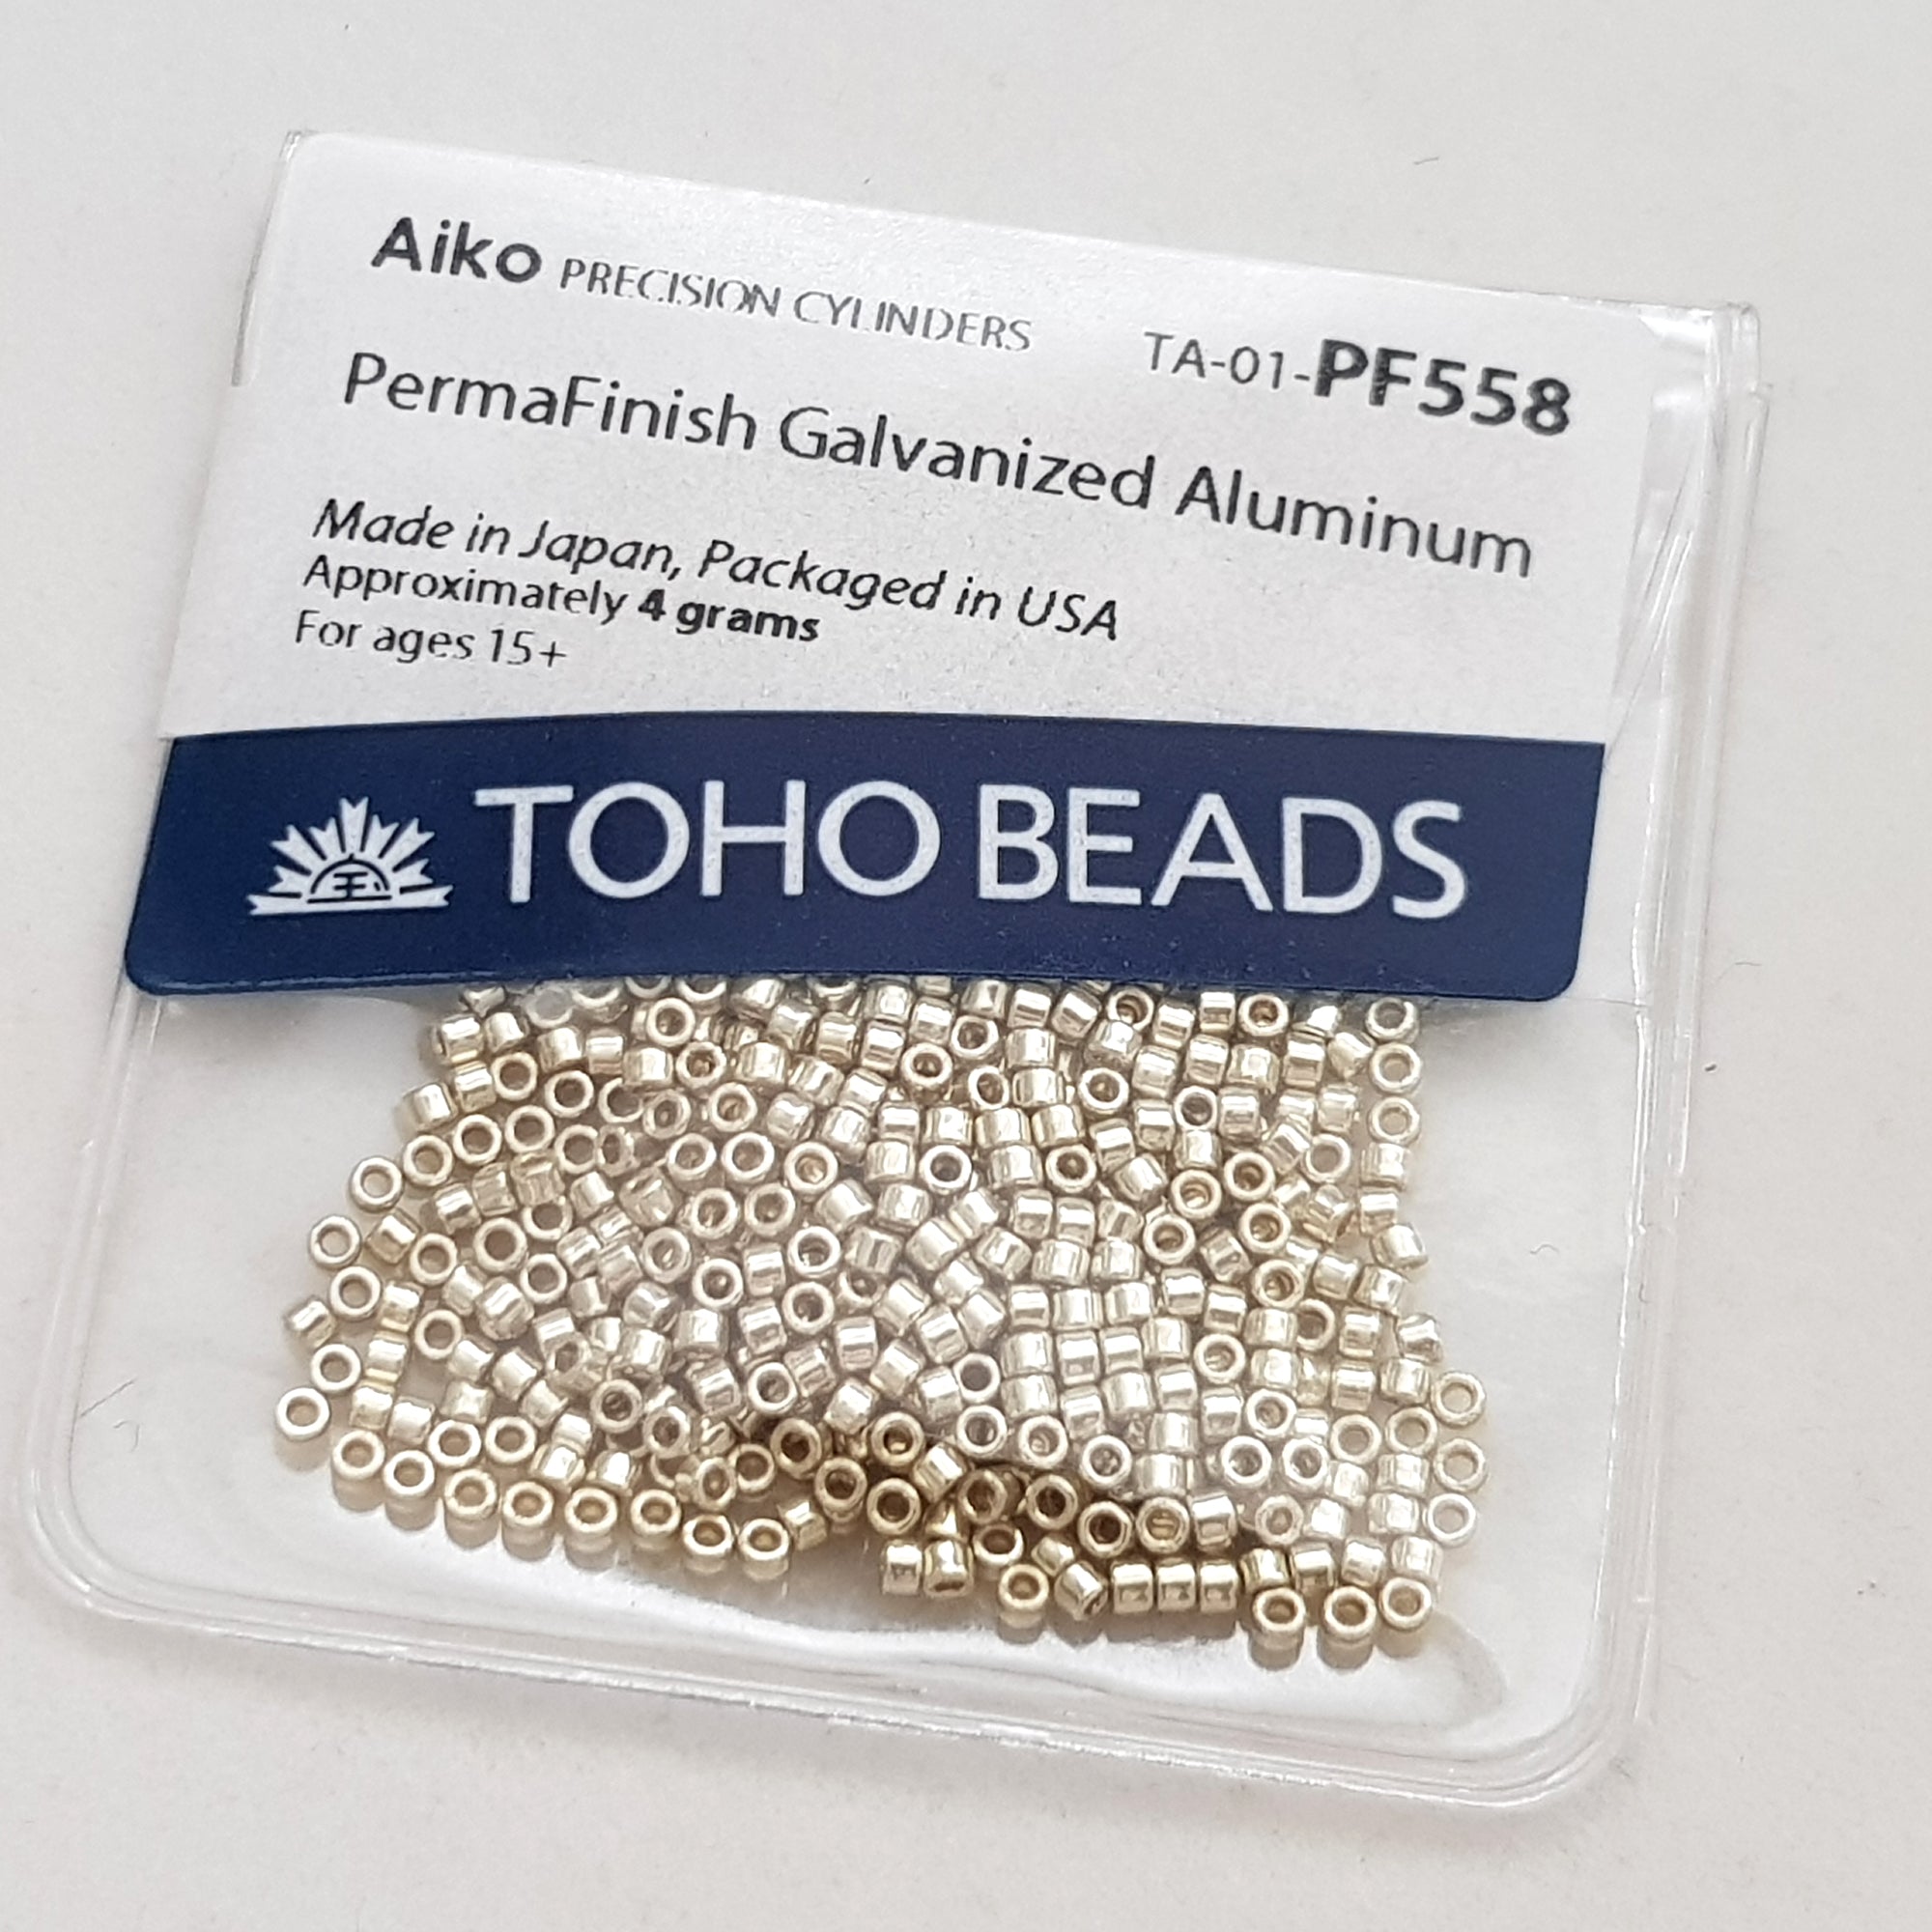 Aiko Aluminium (Silver) PermaFinish #PF558 Toho Beads | Kalitheo 